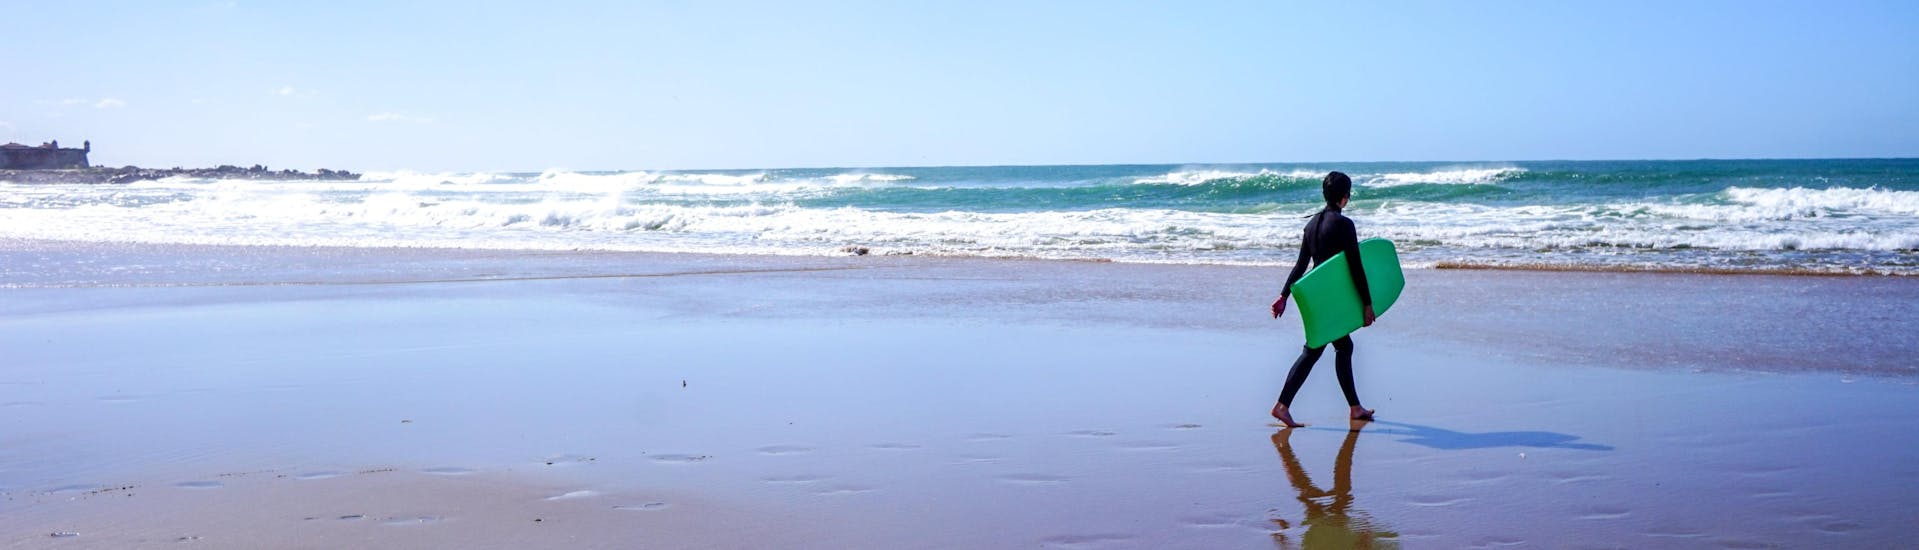 Una joven es fotografiada caminando por la playa con su tabla mientras surfea en Porto.